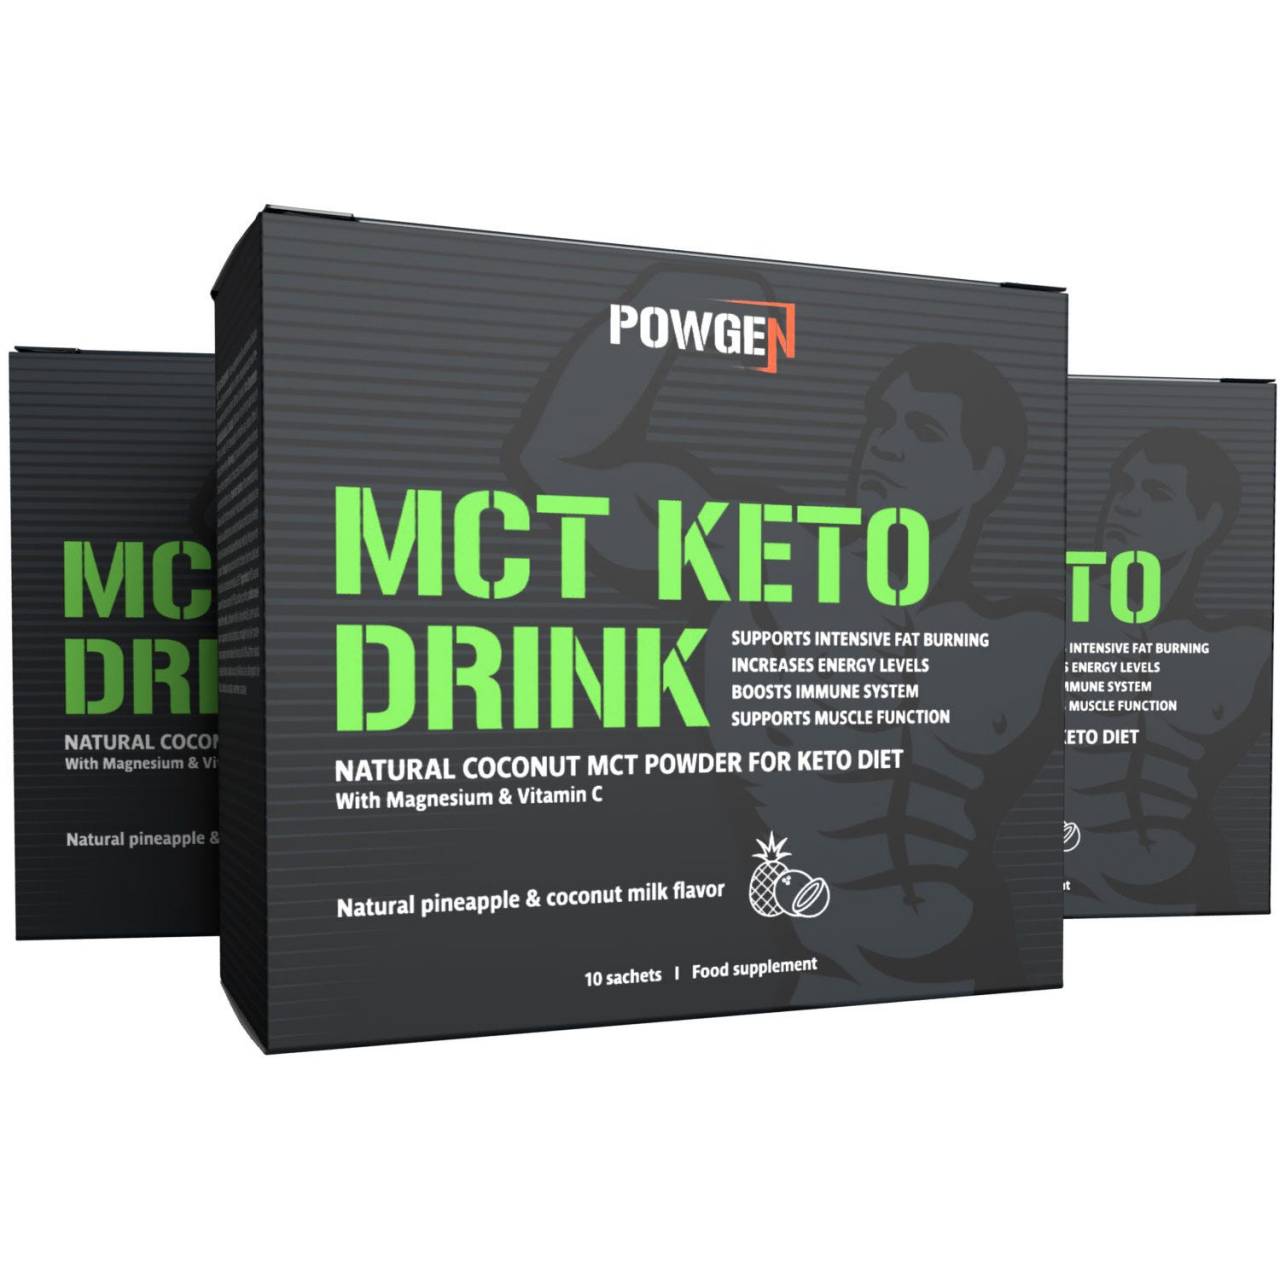 MCT Keto Drink z naravnim kokosovim MCT oljem v prahu 1+2 GRATIS.